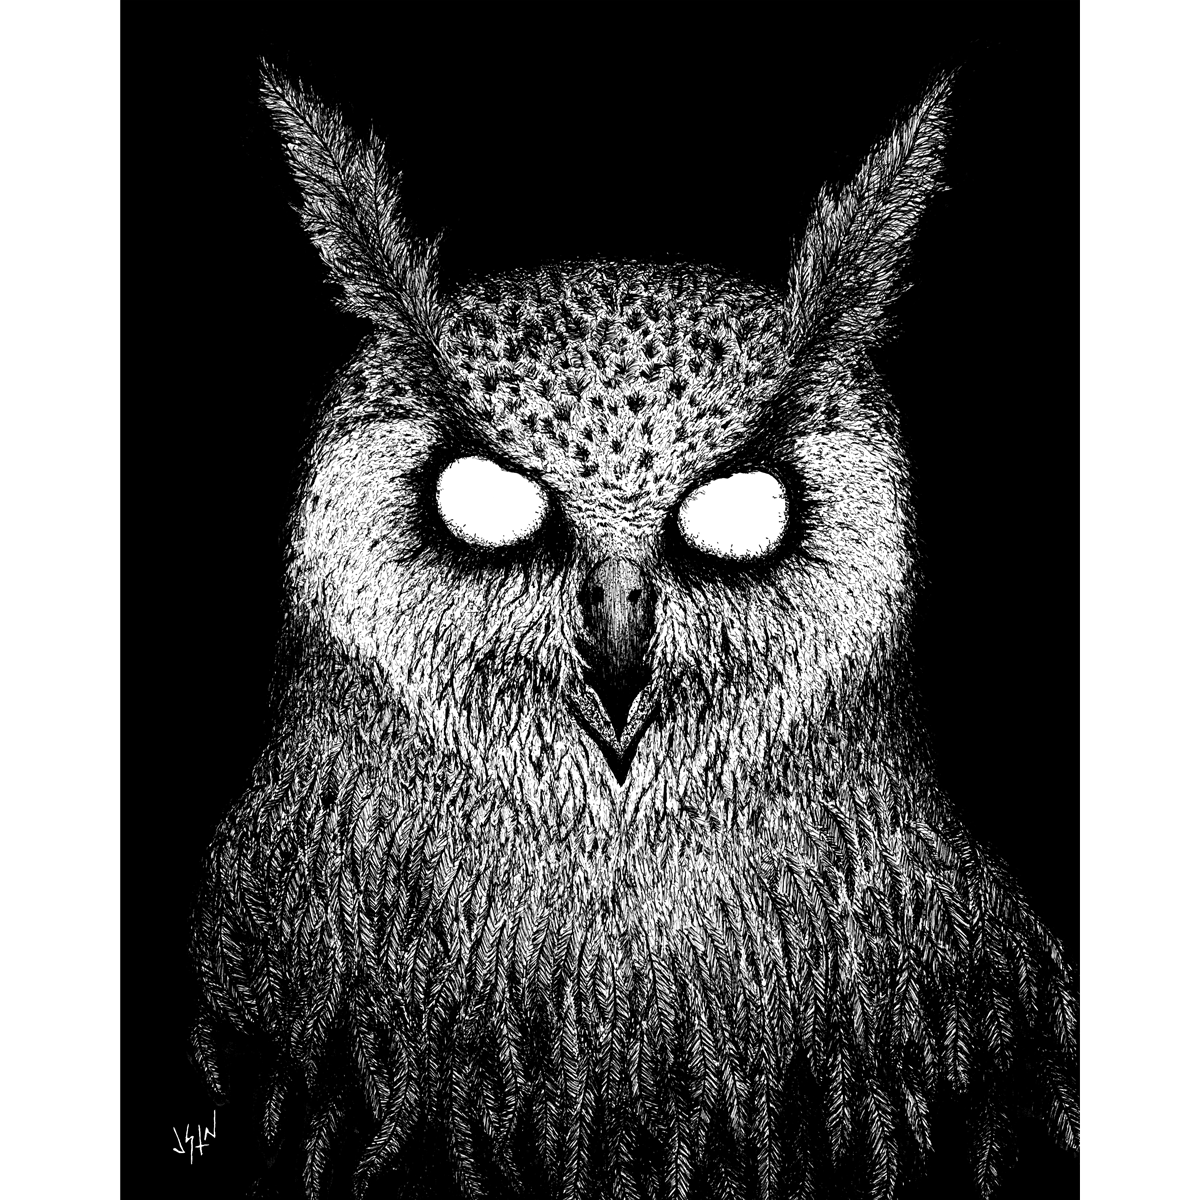 VBERKVLT "Owl" Giclee Print